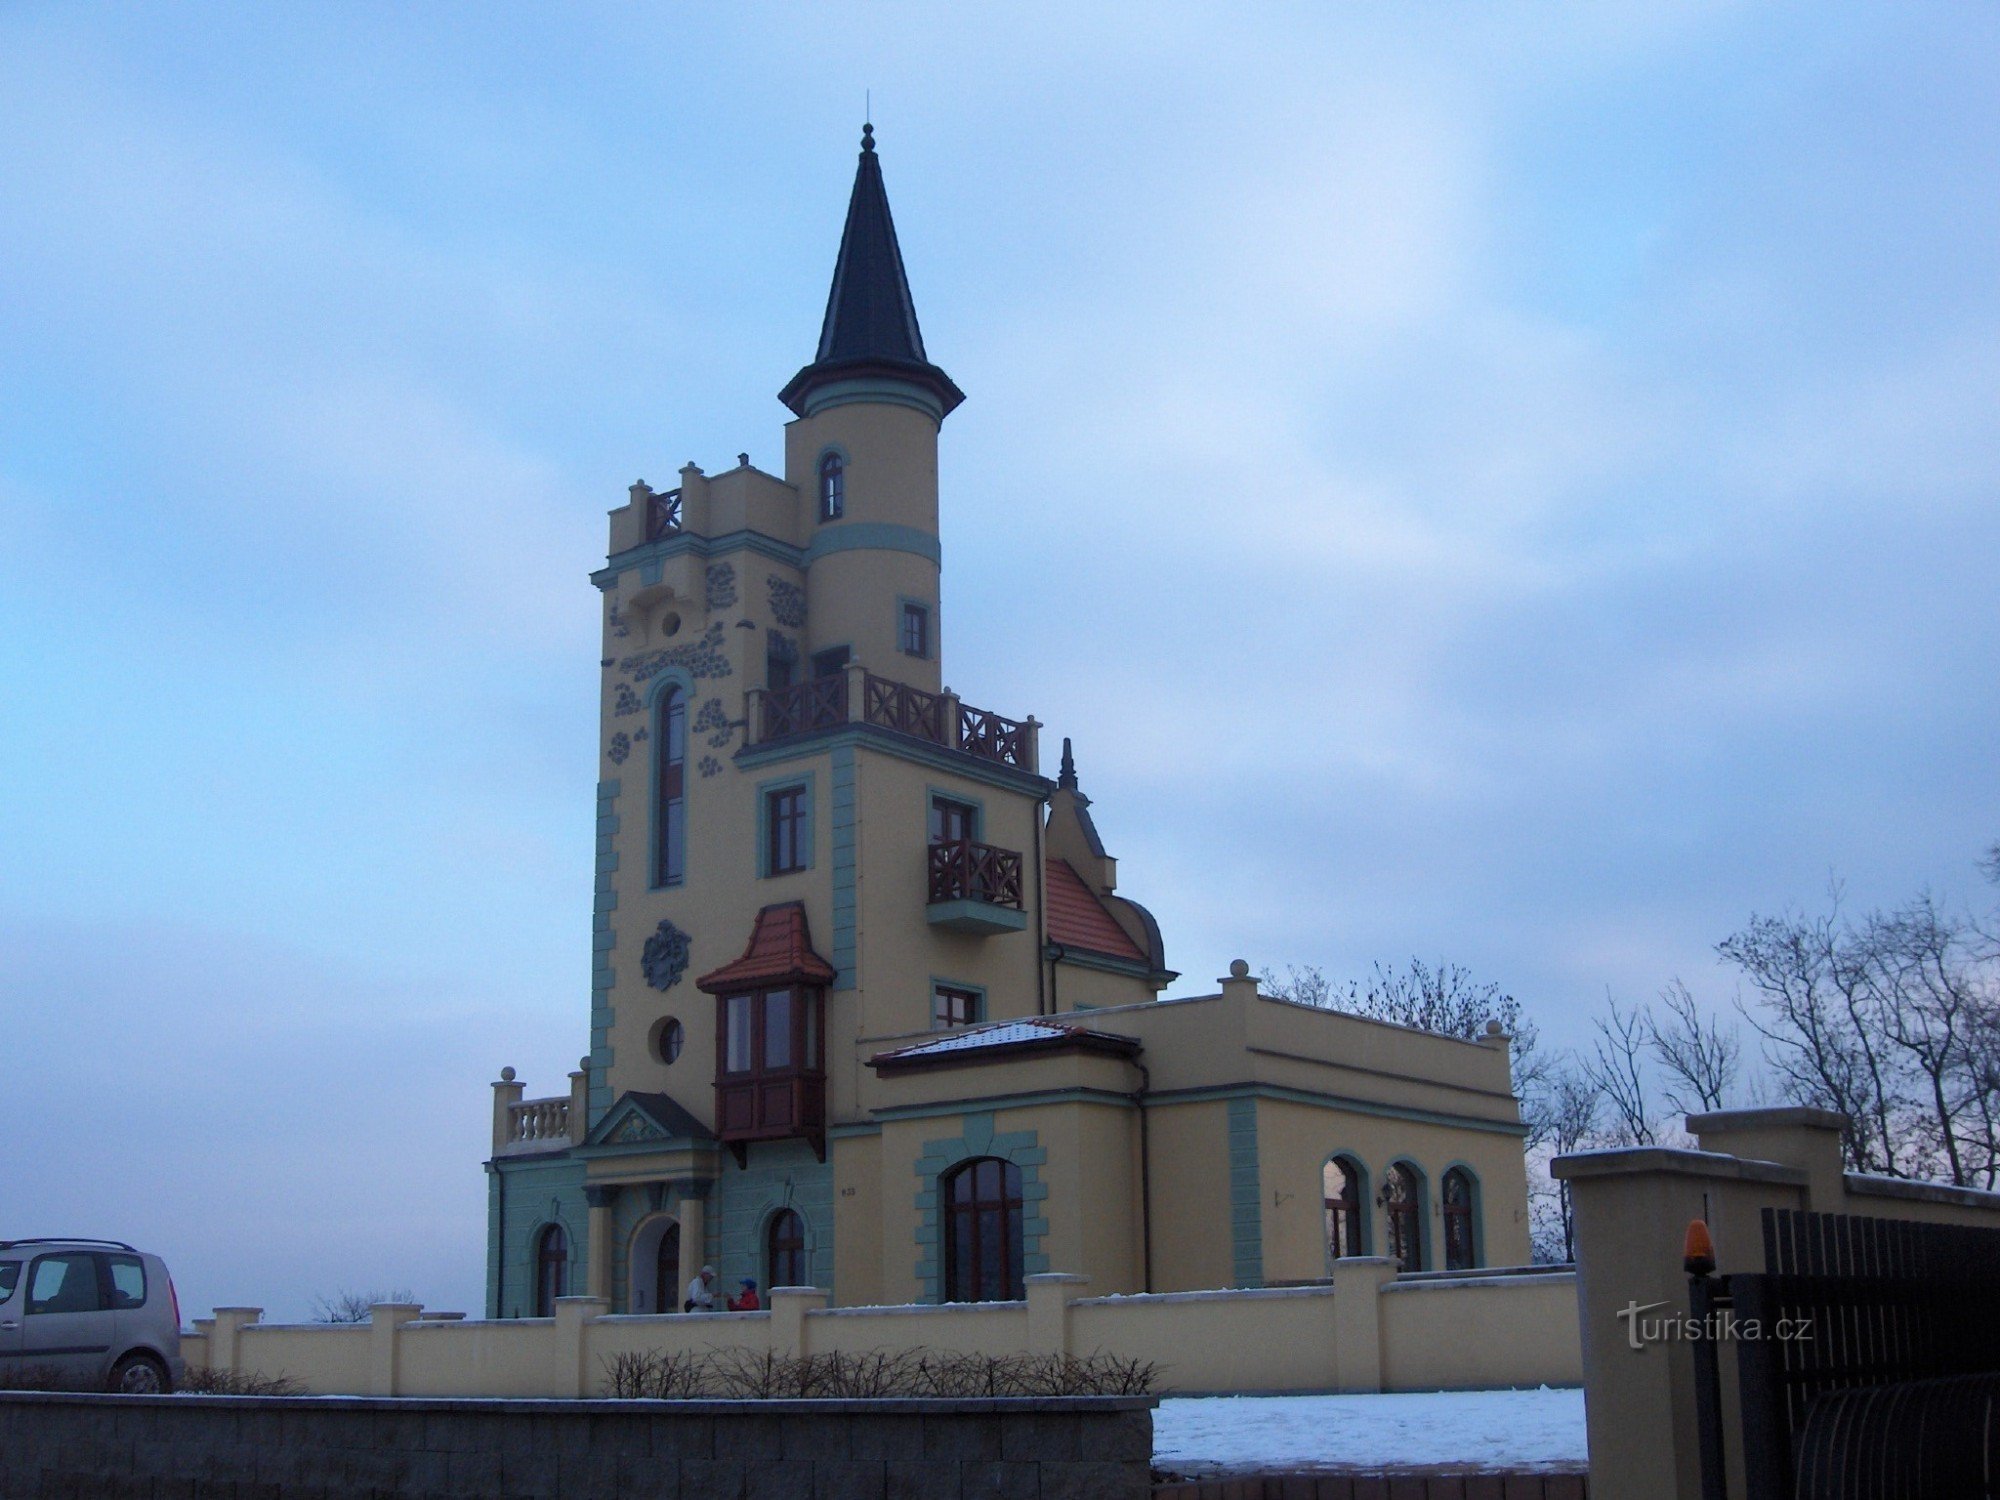 tháp quan sát Stáž của Hoàng đế František Josef